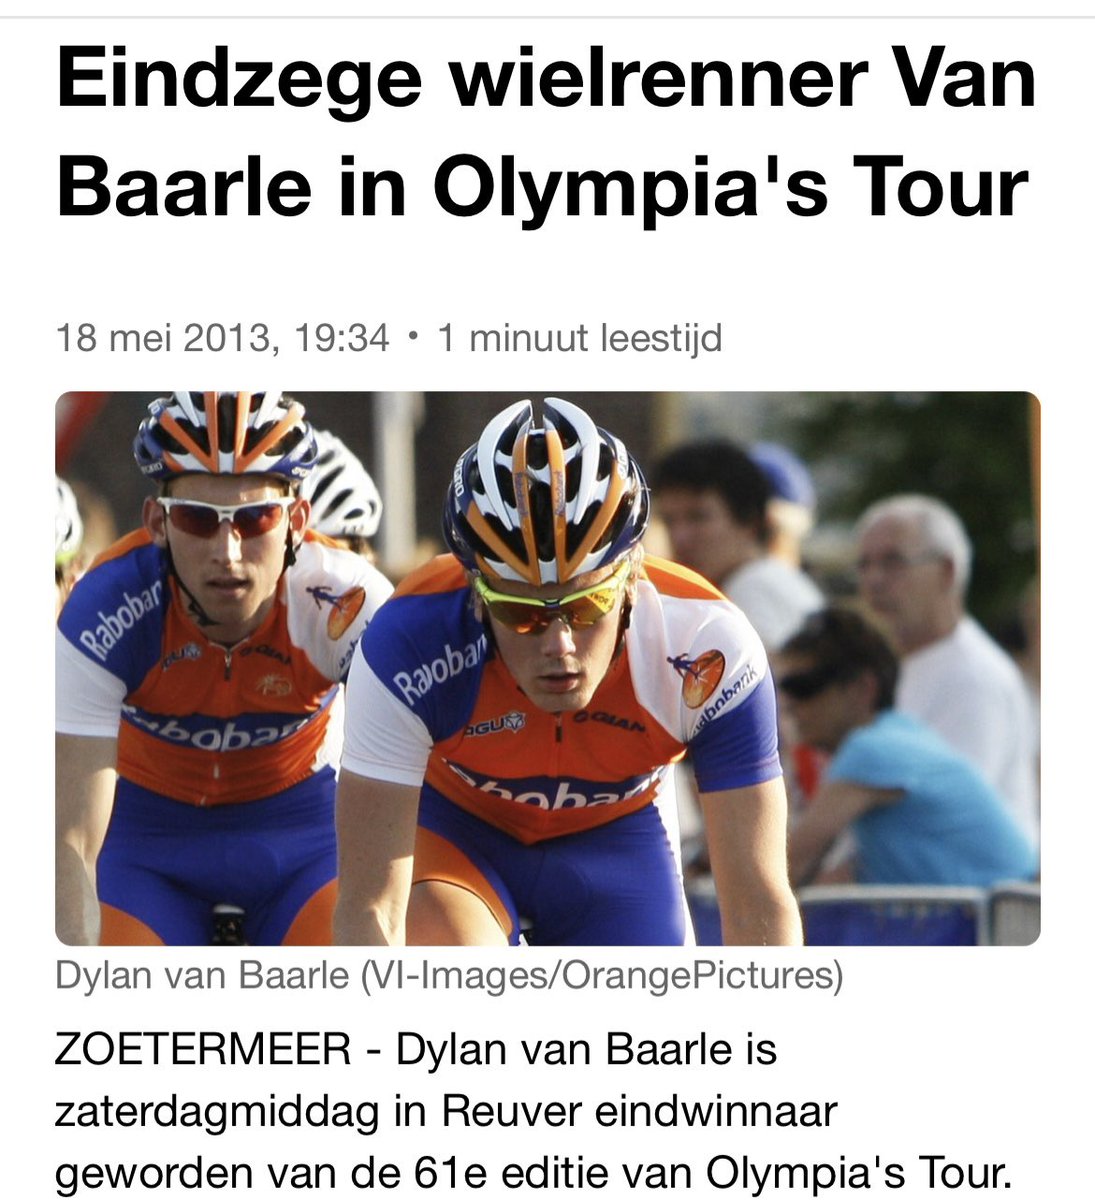 @LimburgCycling @MilanvanWersch @KooijOlav @DylanvanBaarle @mathieuvdpoel @KNWU Dylan van Aarle in 2013 winnaar @OlympiasTour in @Gemeente_Beesel